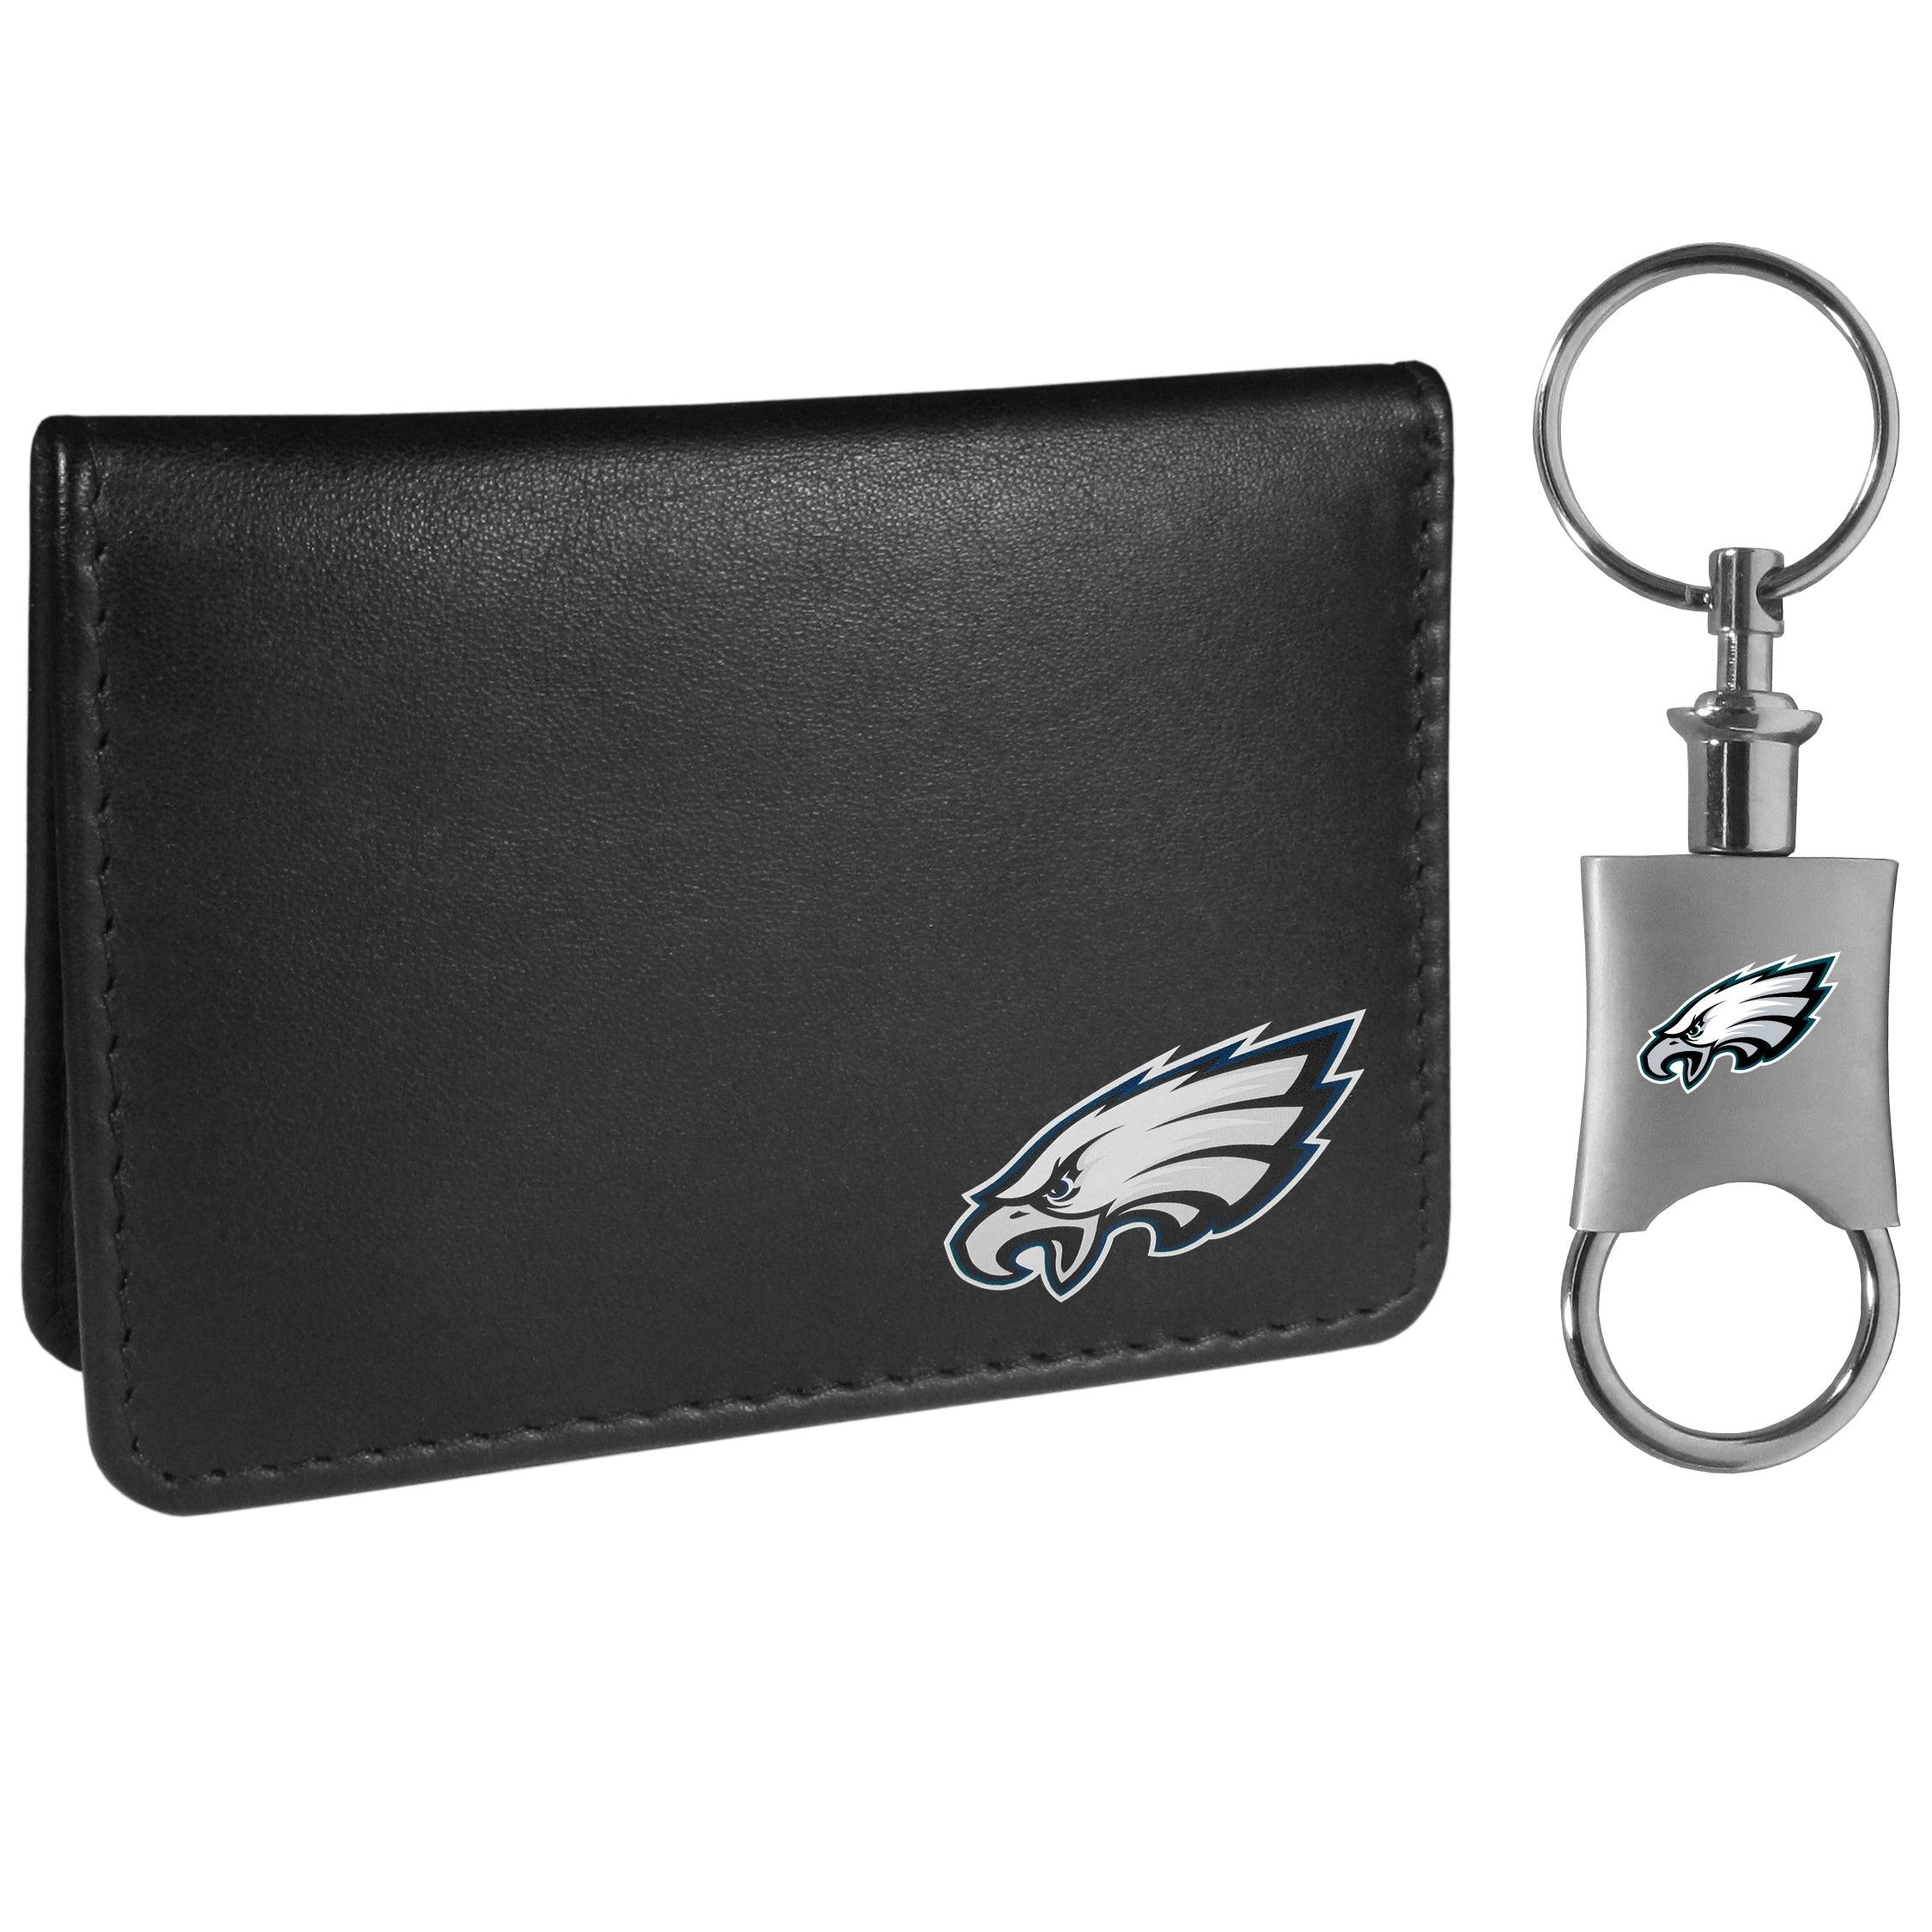 Eagles Wings Utah Utes Leather Bifold Wallet